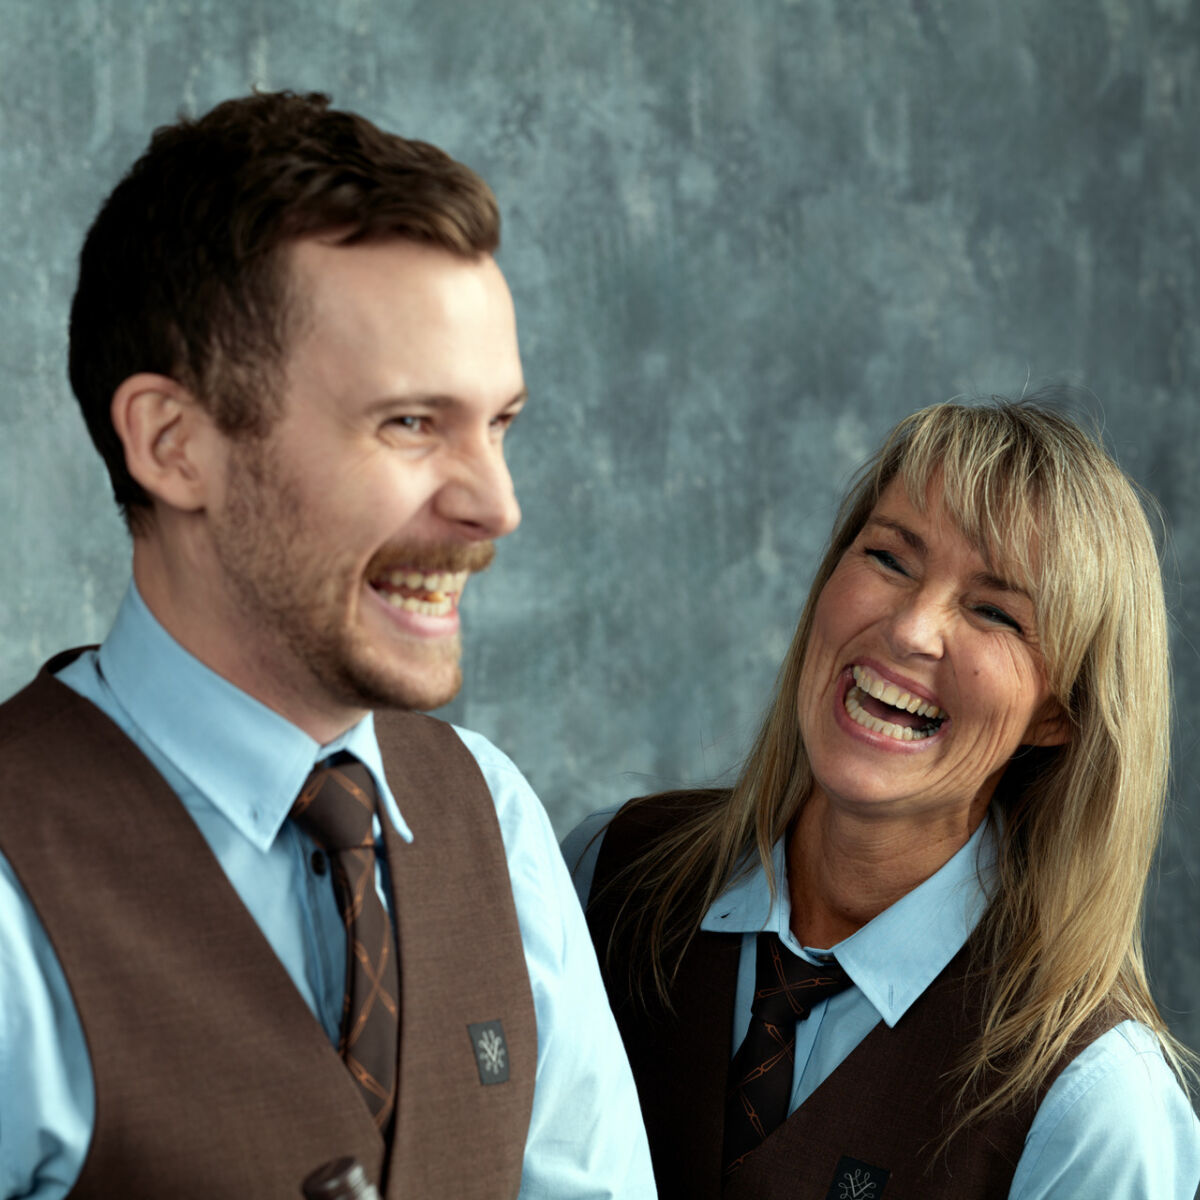 Bilde av to ansatte i Vinmonopolet som ler sammen.